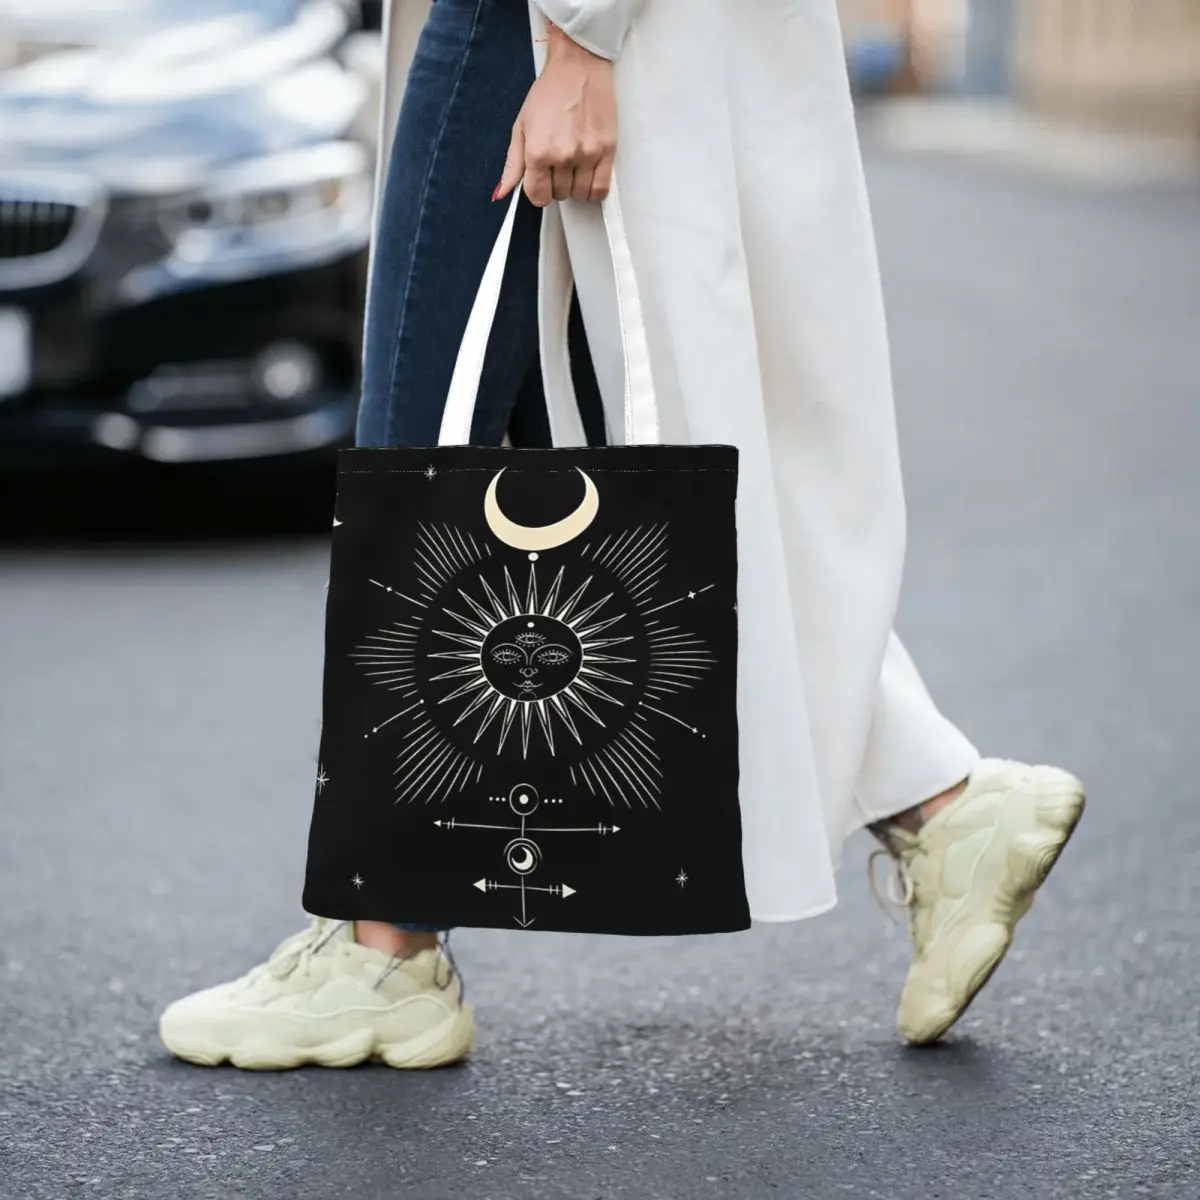 Tarot Sun & Moon Totes Canvas Handbag Women Canvas Shopping Bag